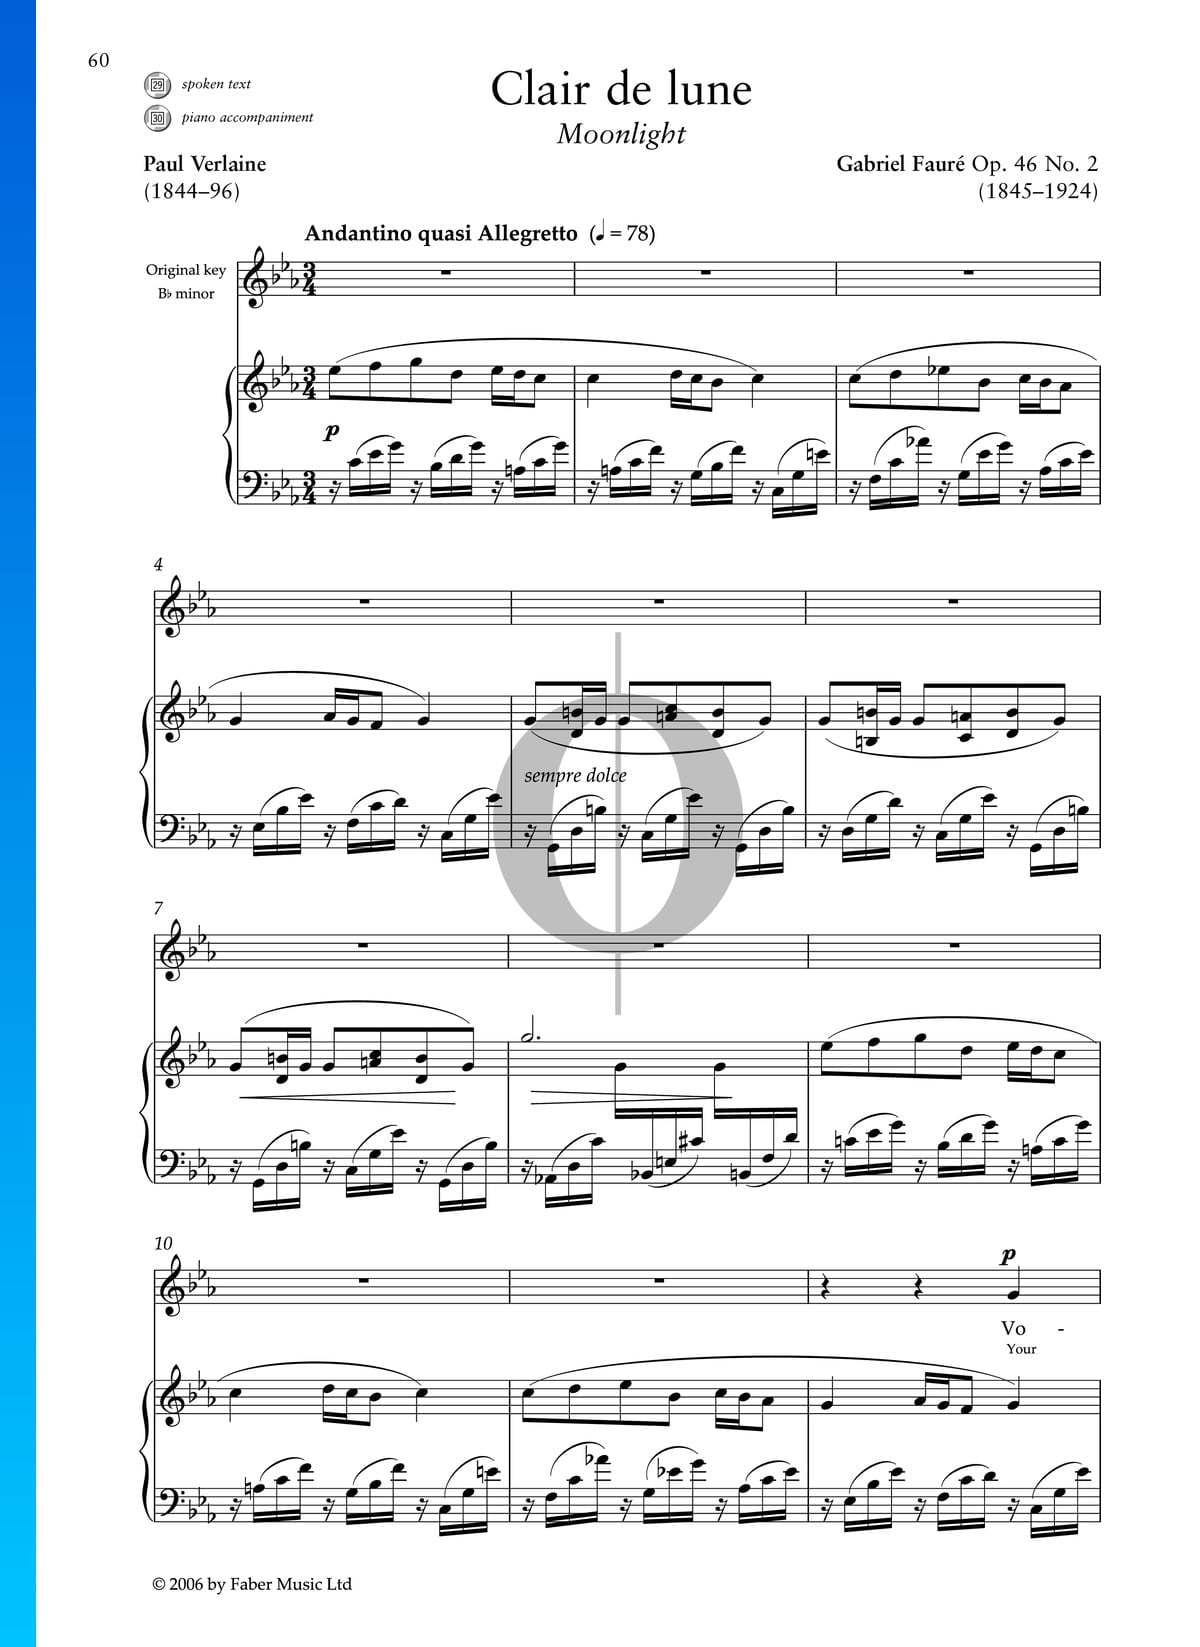 Clair de Lune, Op. 46 No. 2 Sheet Music (Piano)